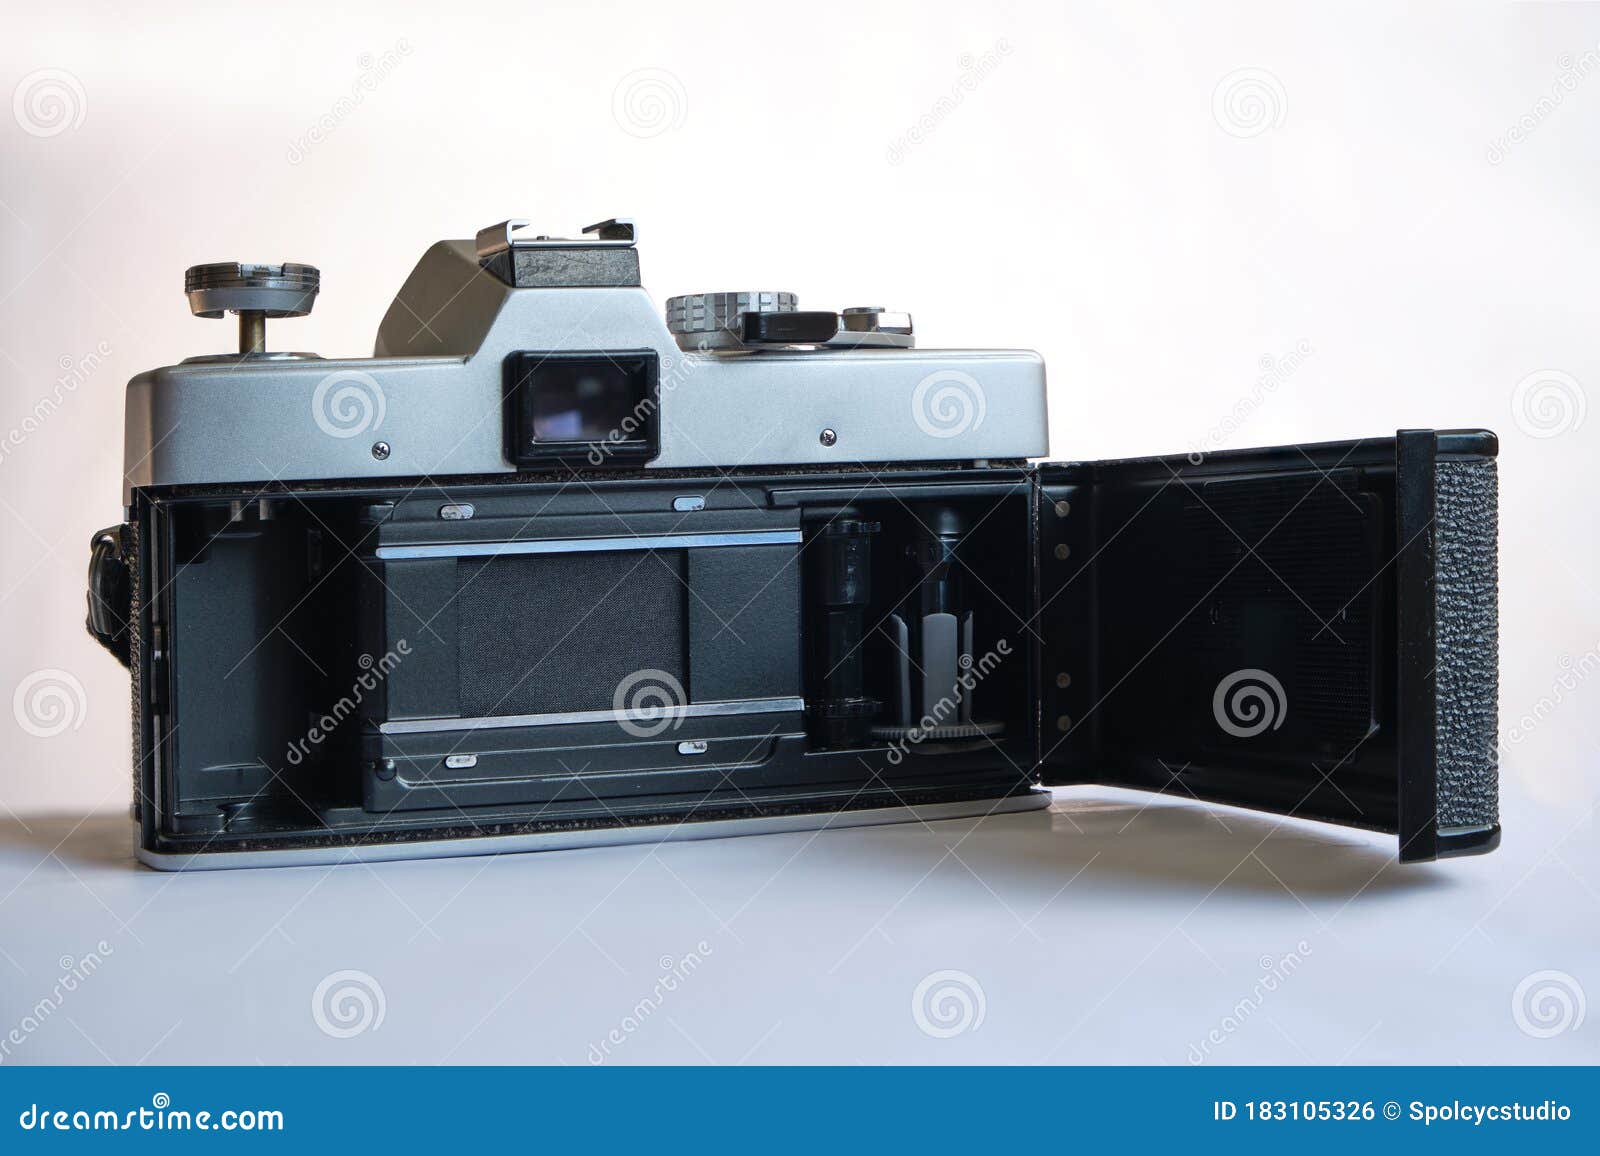 minolta sr-t 101 vintage 35mm analog film camera